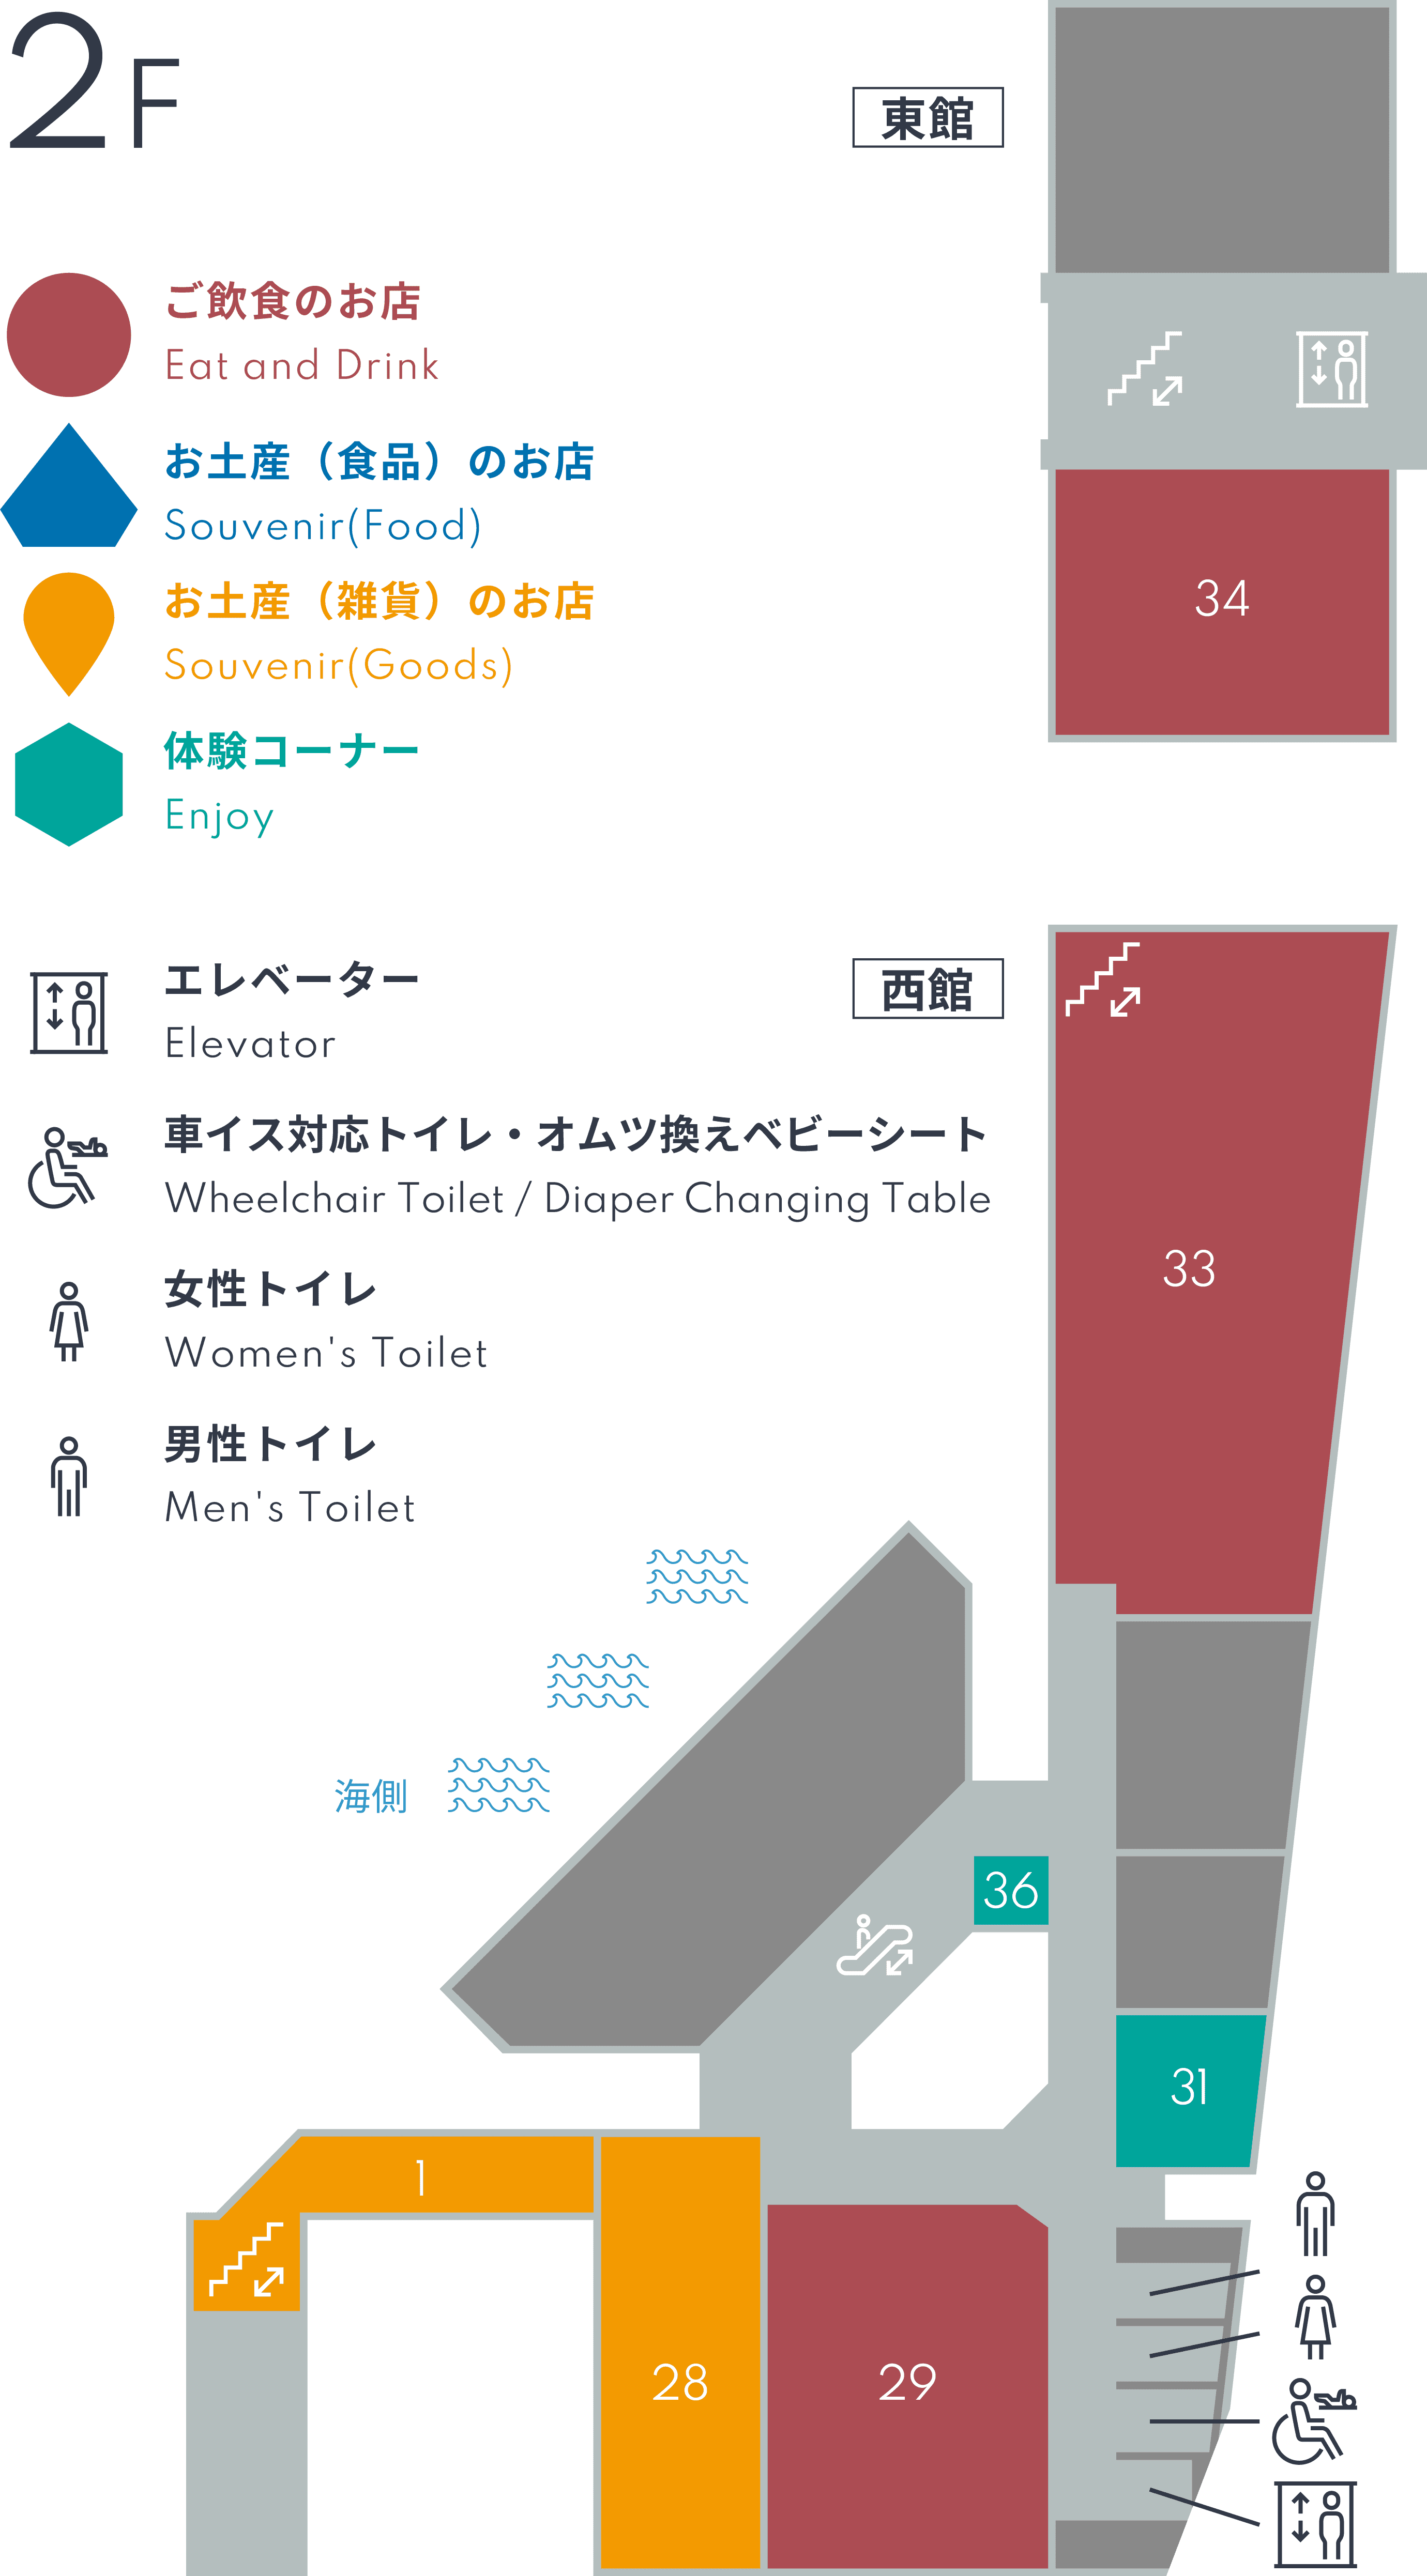 Floor Guide - 2F